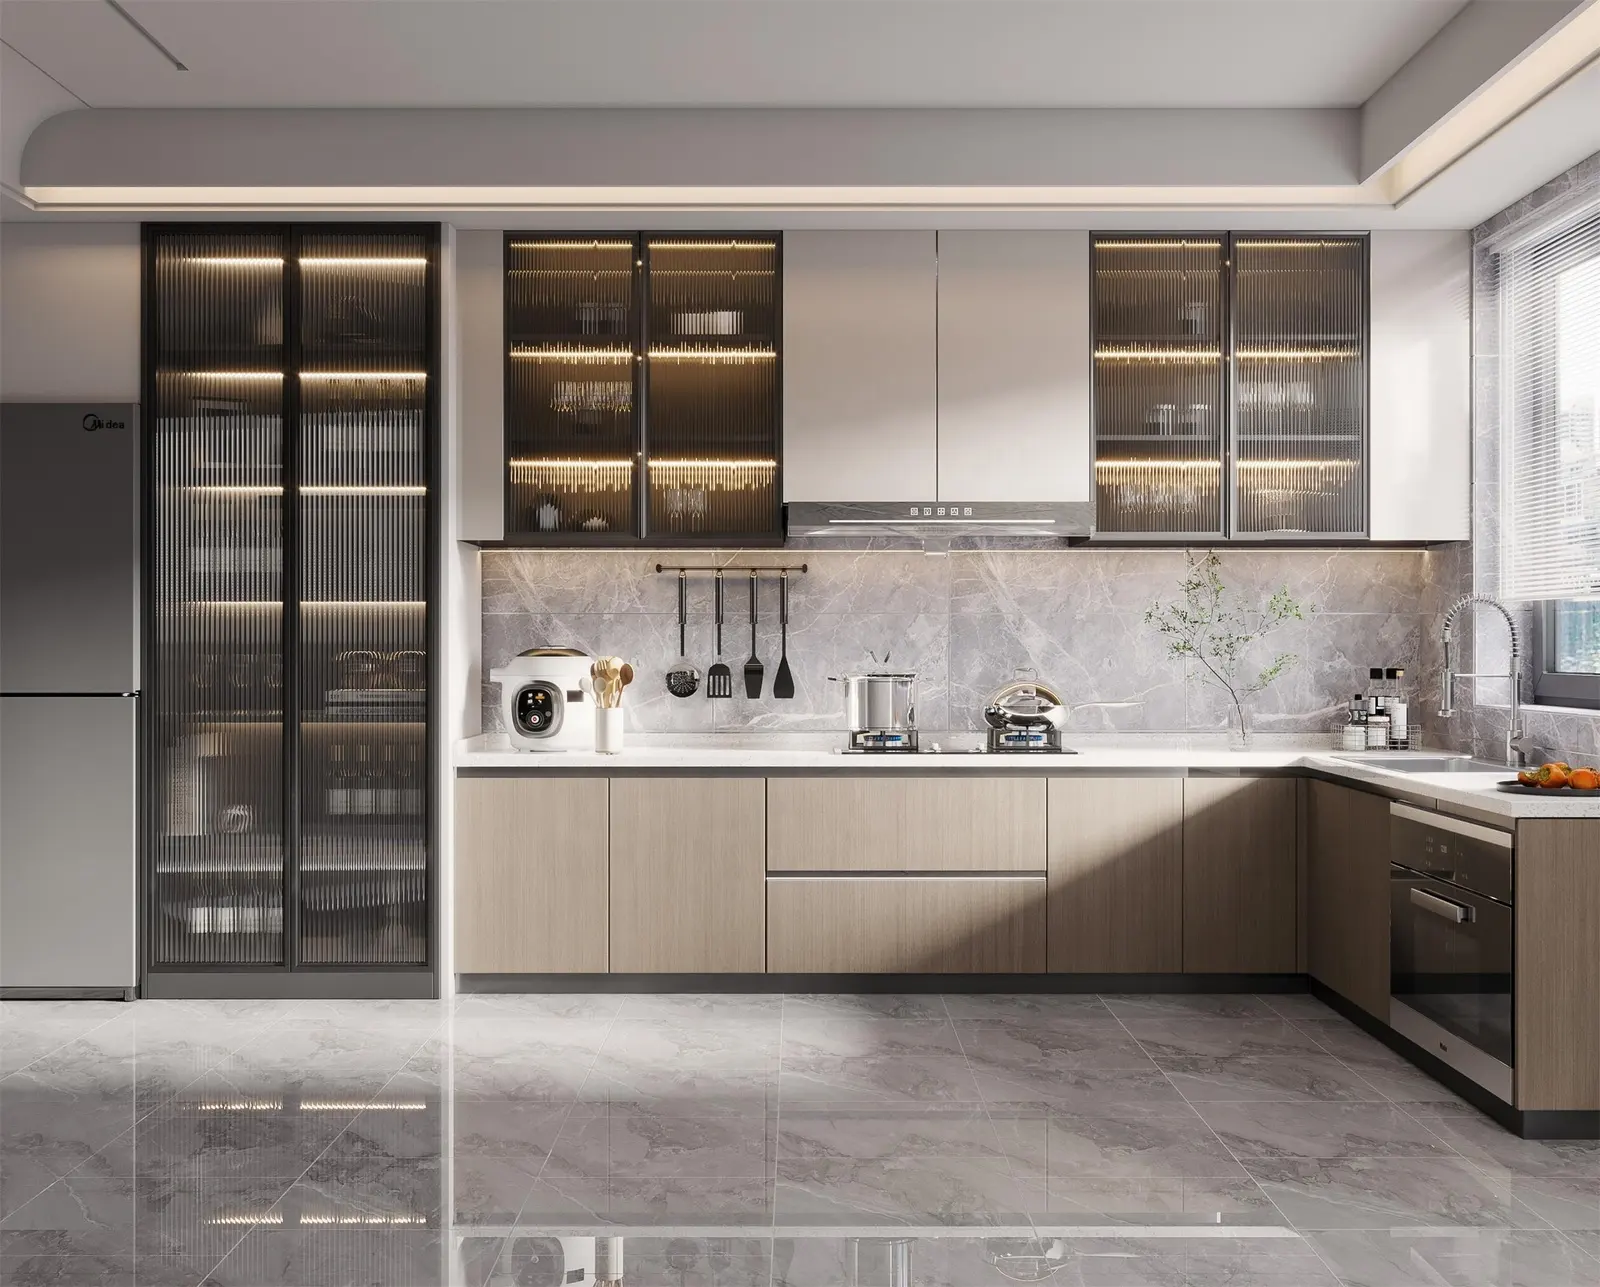 Quartzo laje bancada acrílico moderna cozinha design ilha hmr aglomerado cozinha escandinavo armário